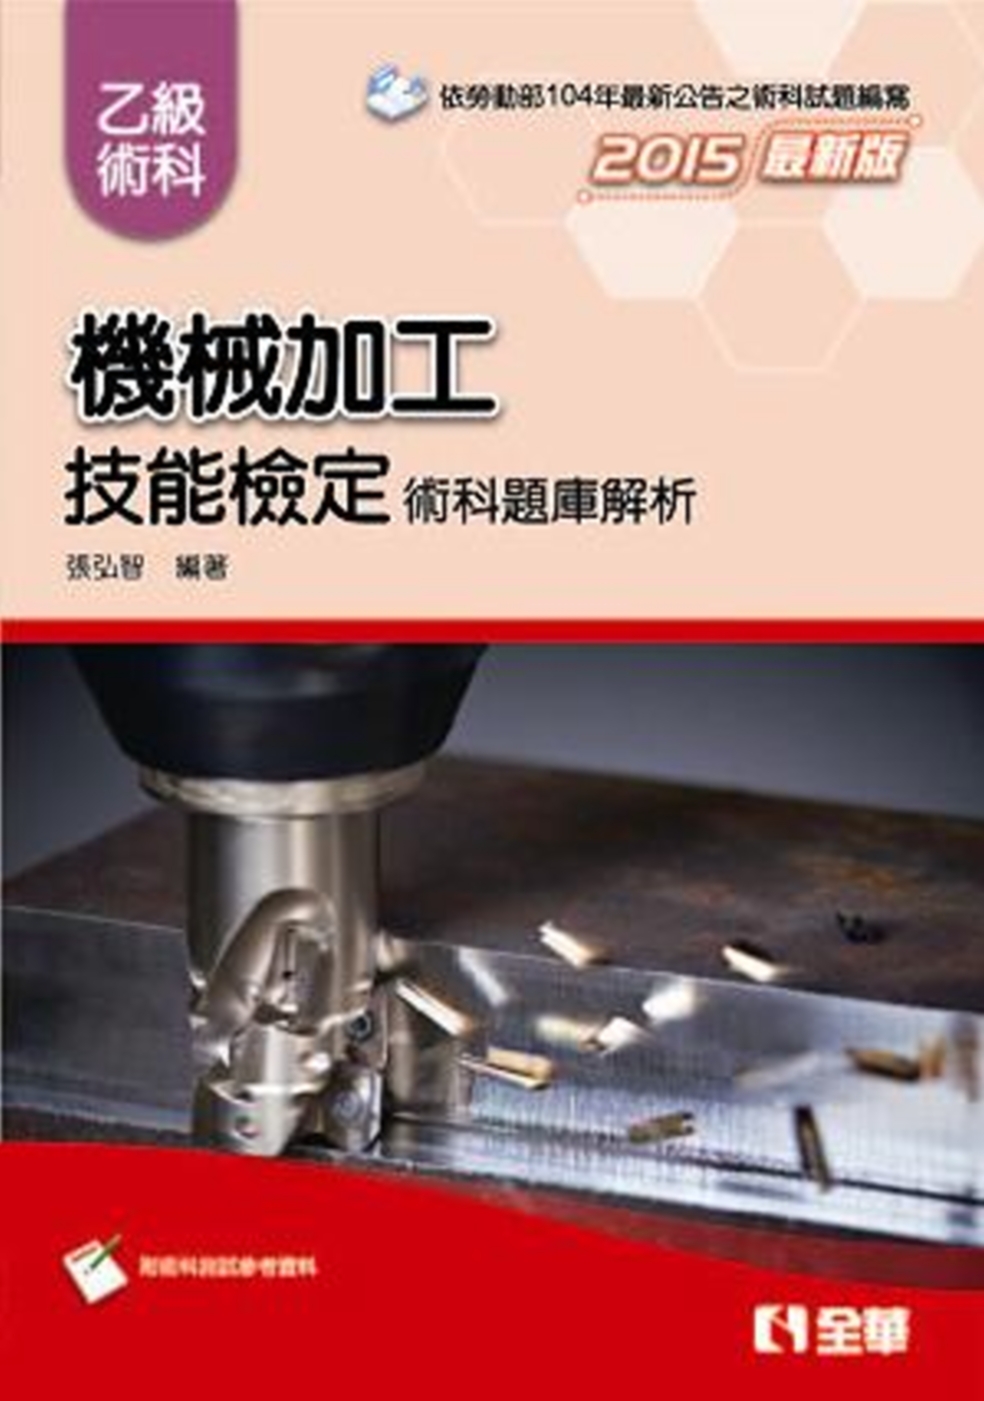 乙級機械加工技能檢定術科題庫解析(2015最新版)(附術科測試參考資料)